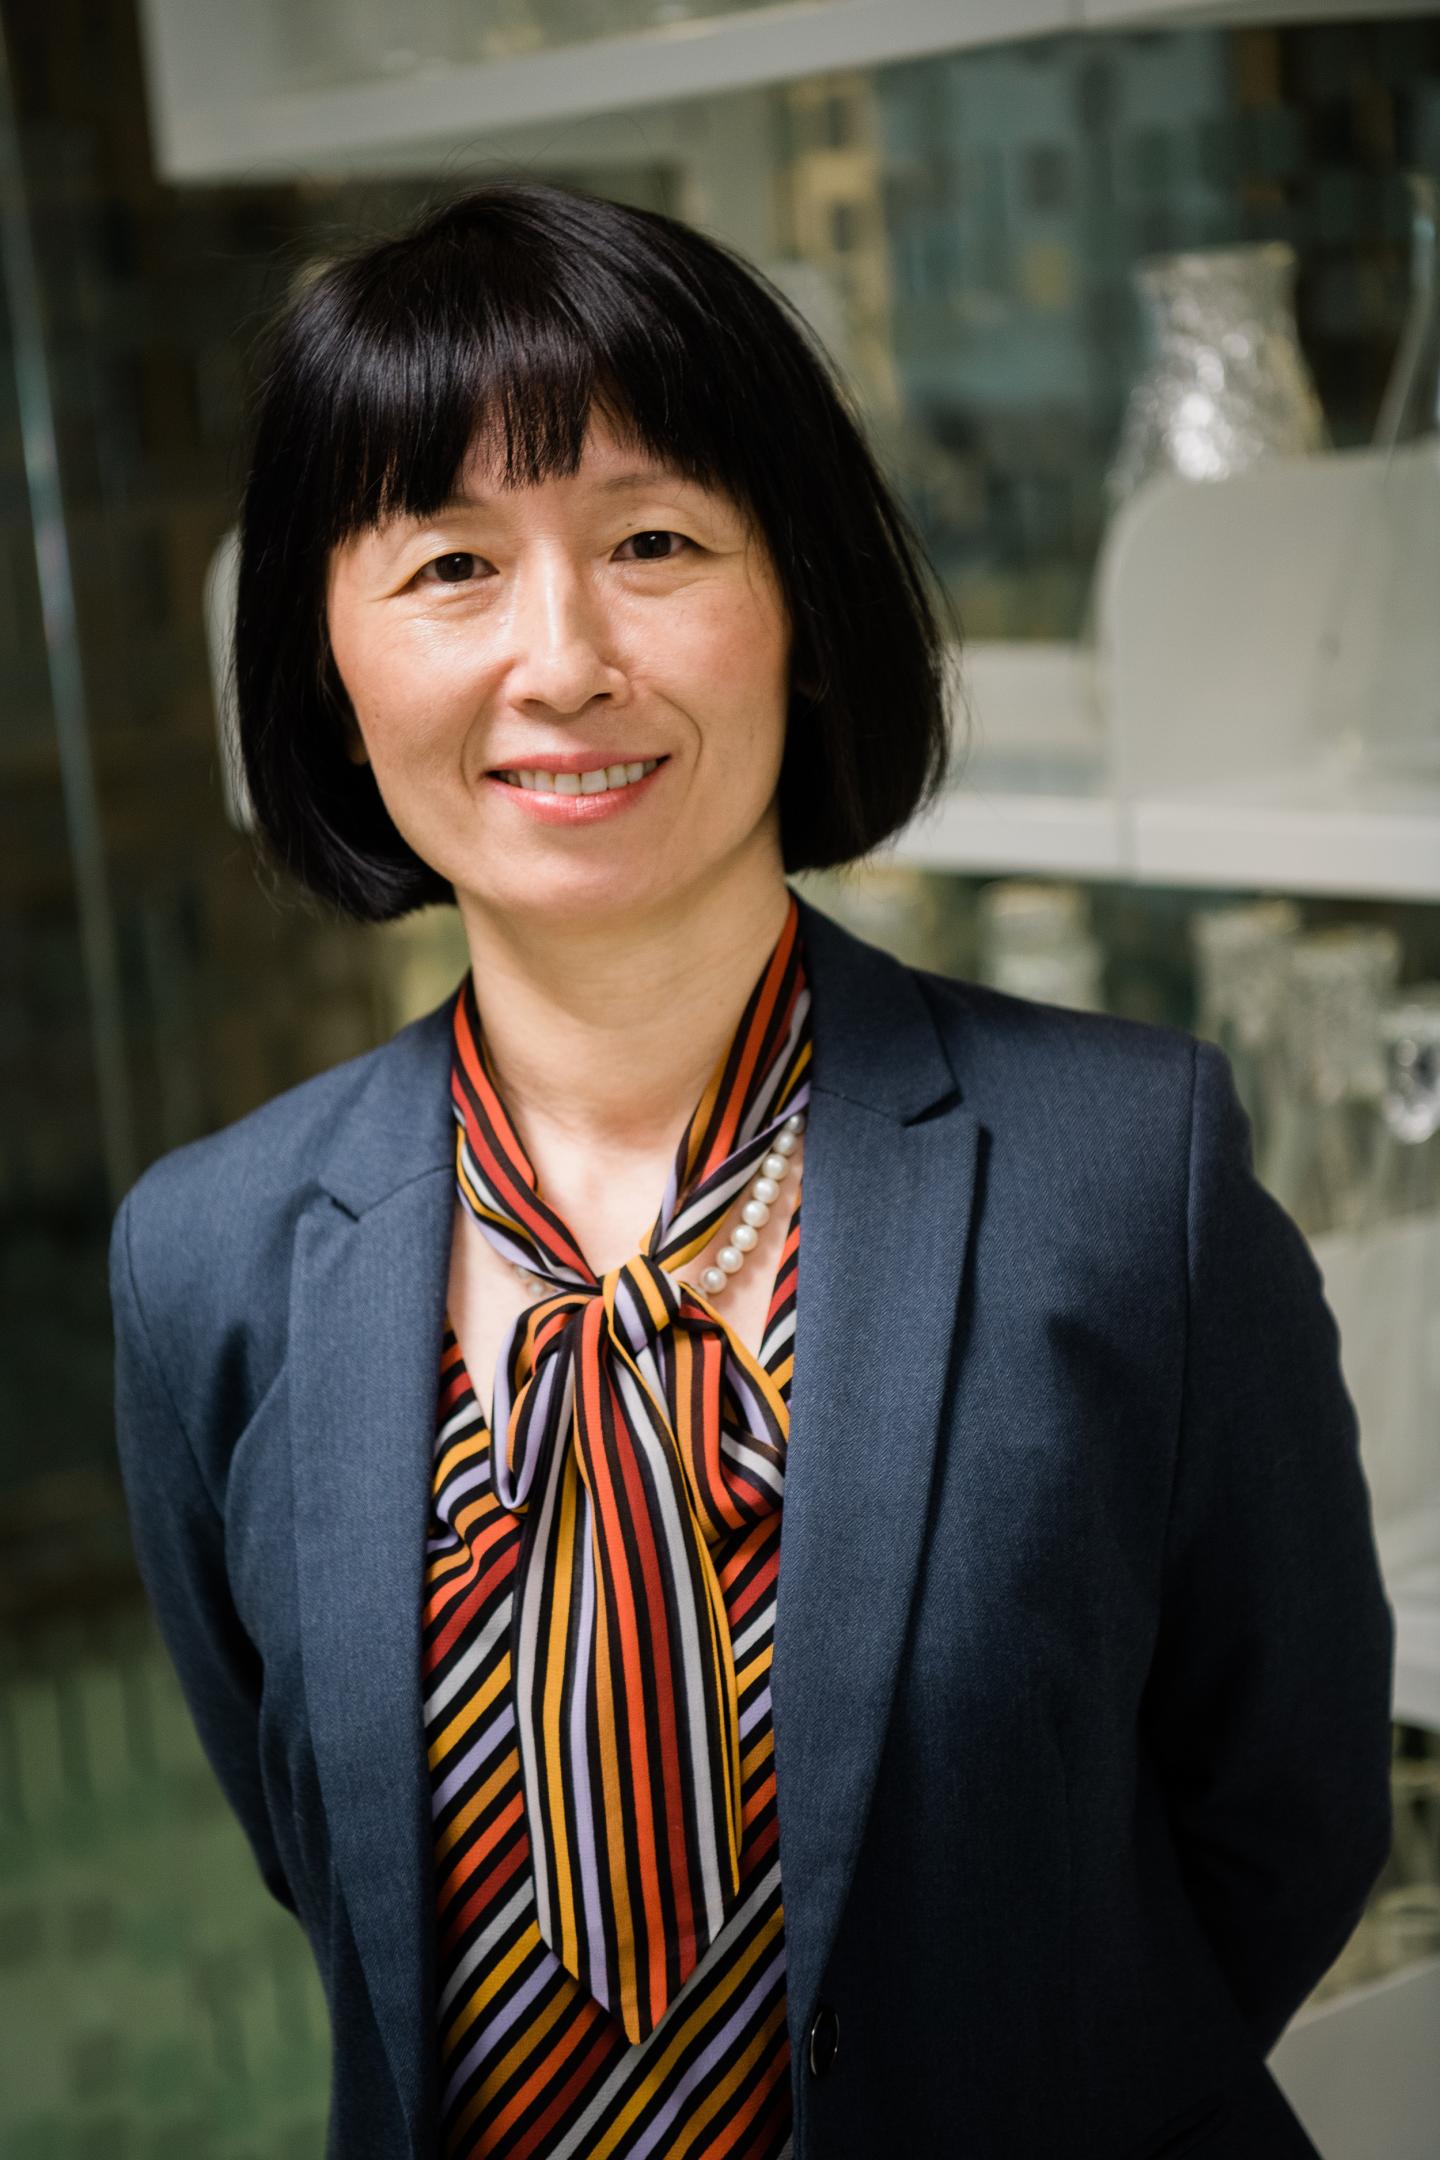 Margaret Sällberg Chen, Karolinska Institutet